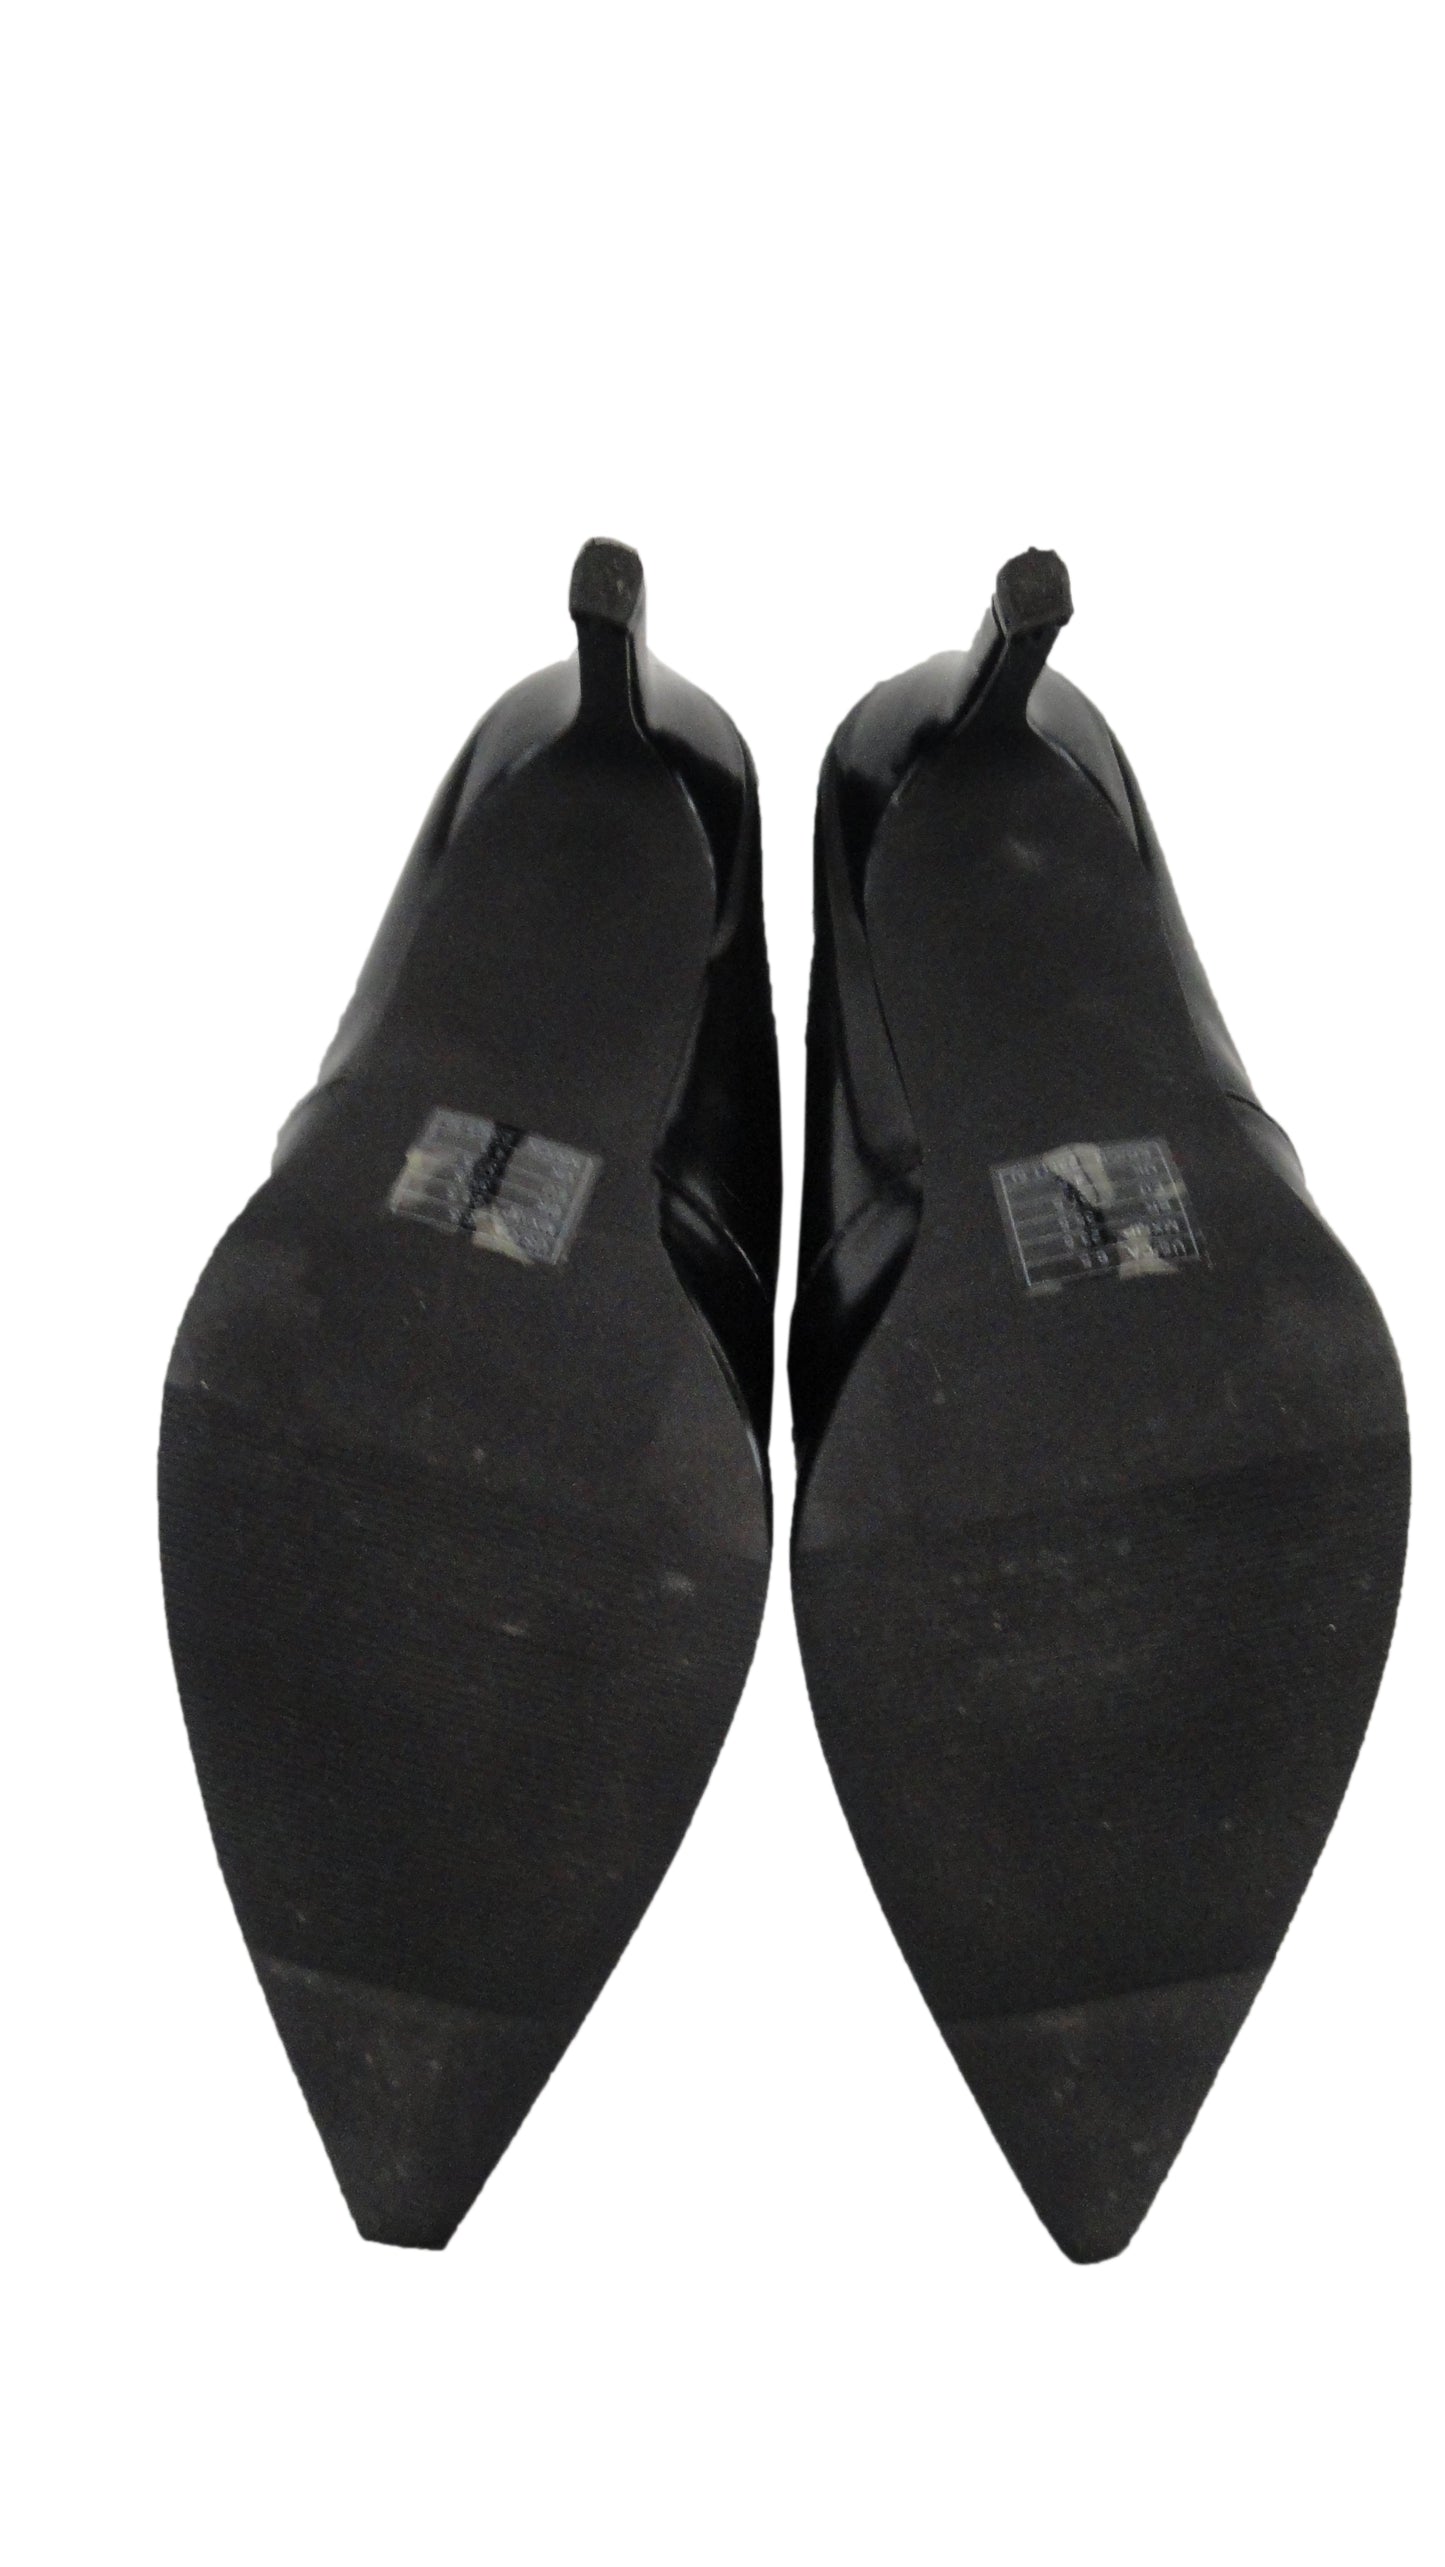 Forever 21 Black High Heel Mules NWOT Size 6-1/2 (SKU 000277-5)